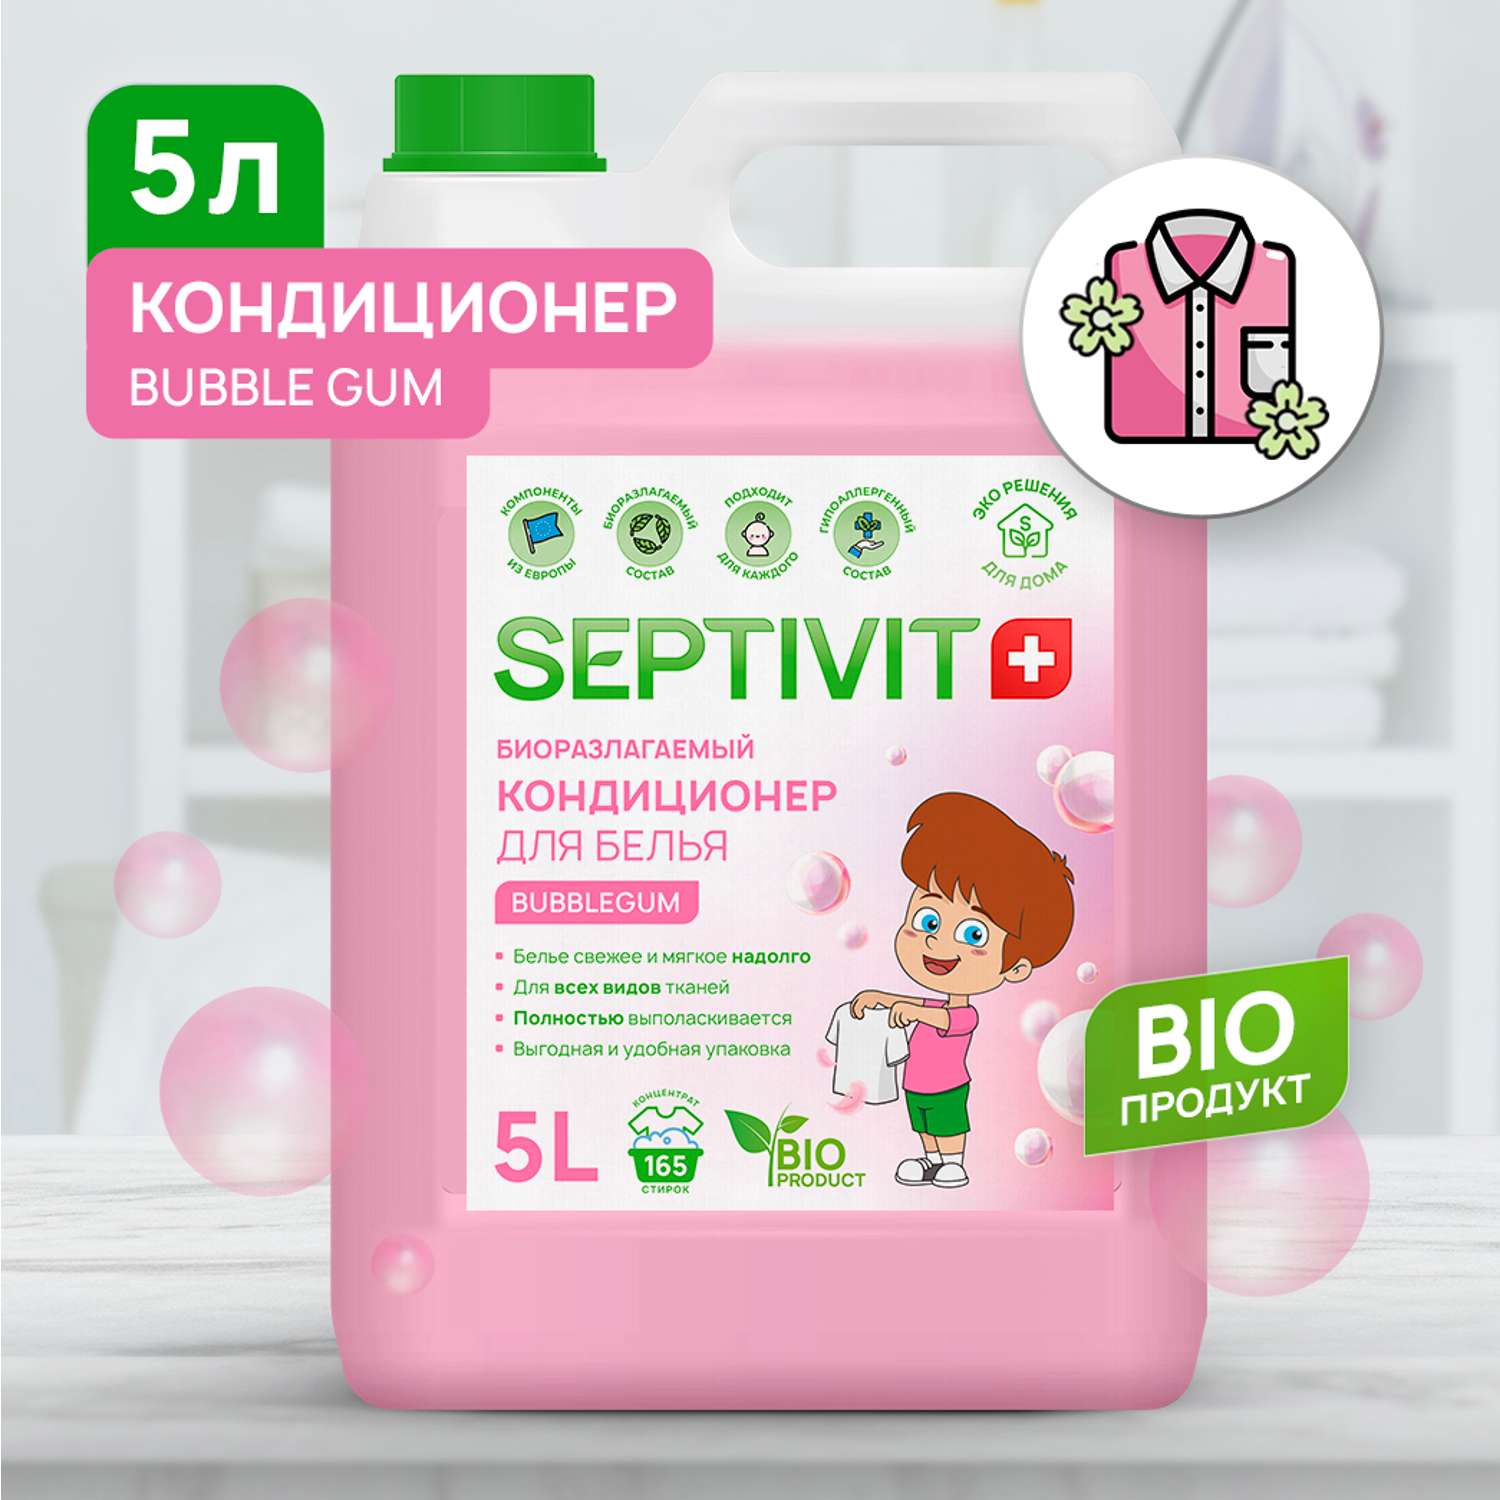 Кондиционер для белья SEPTIVIT Premium 5л с ароматом Bubble gum - фото 1